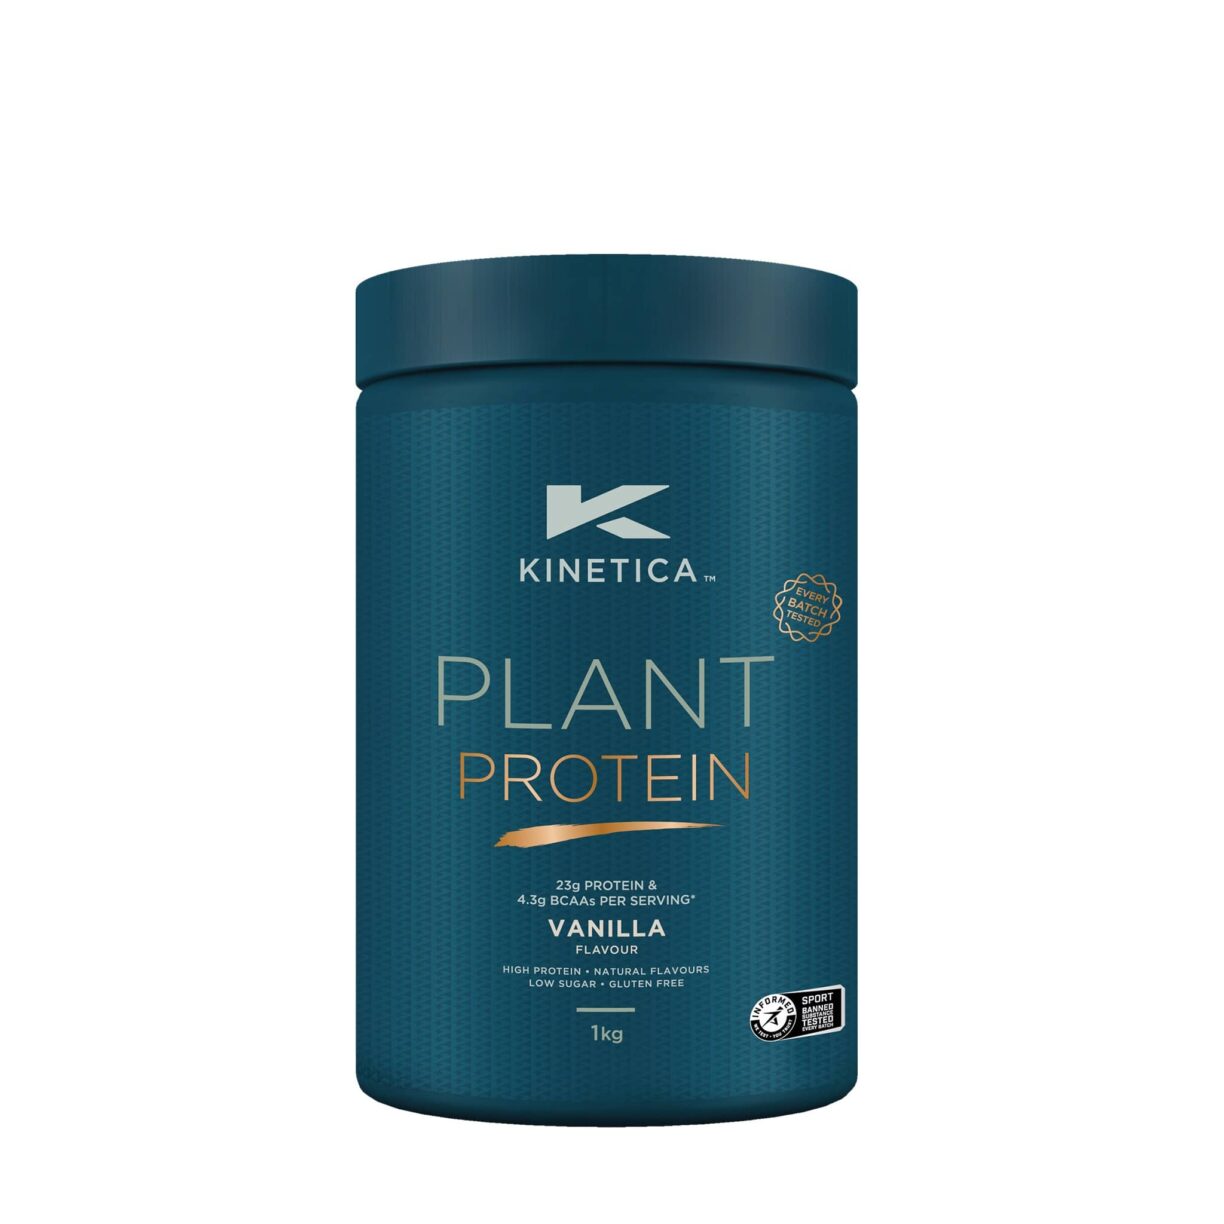 Plant protein kinetica vanilla